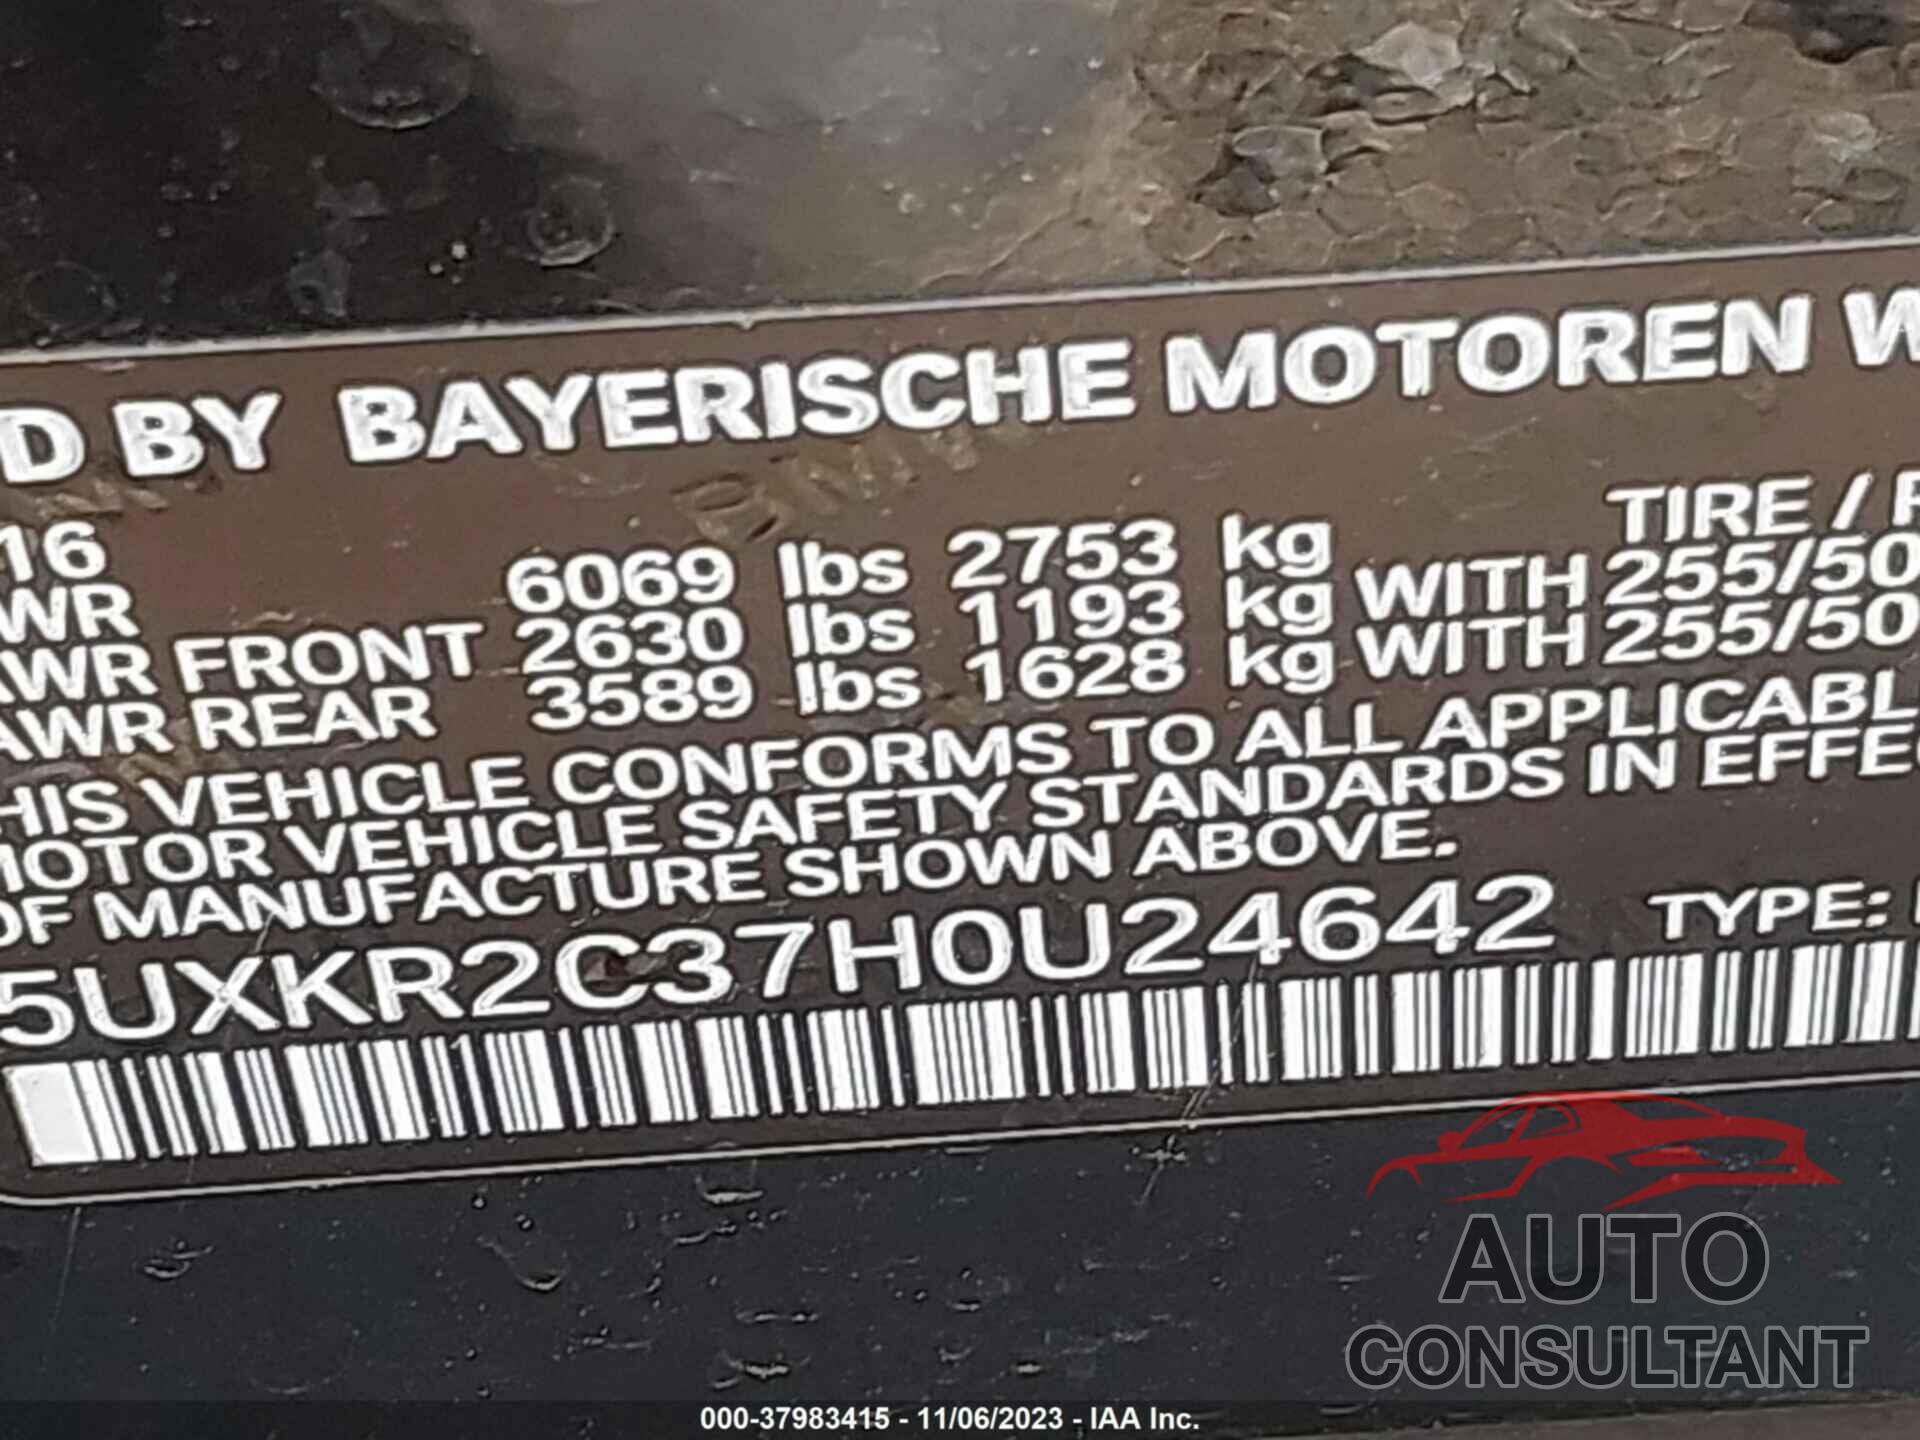 BMW X5 2017 - 5UXKR2C37H0U24642